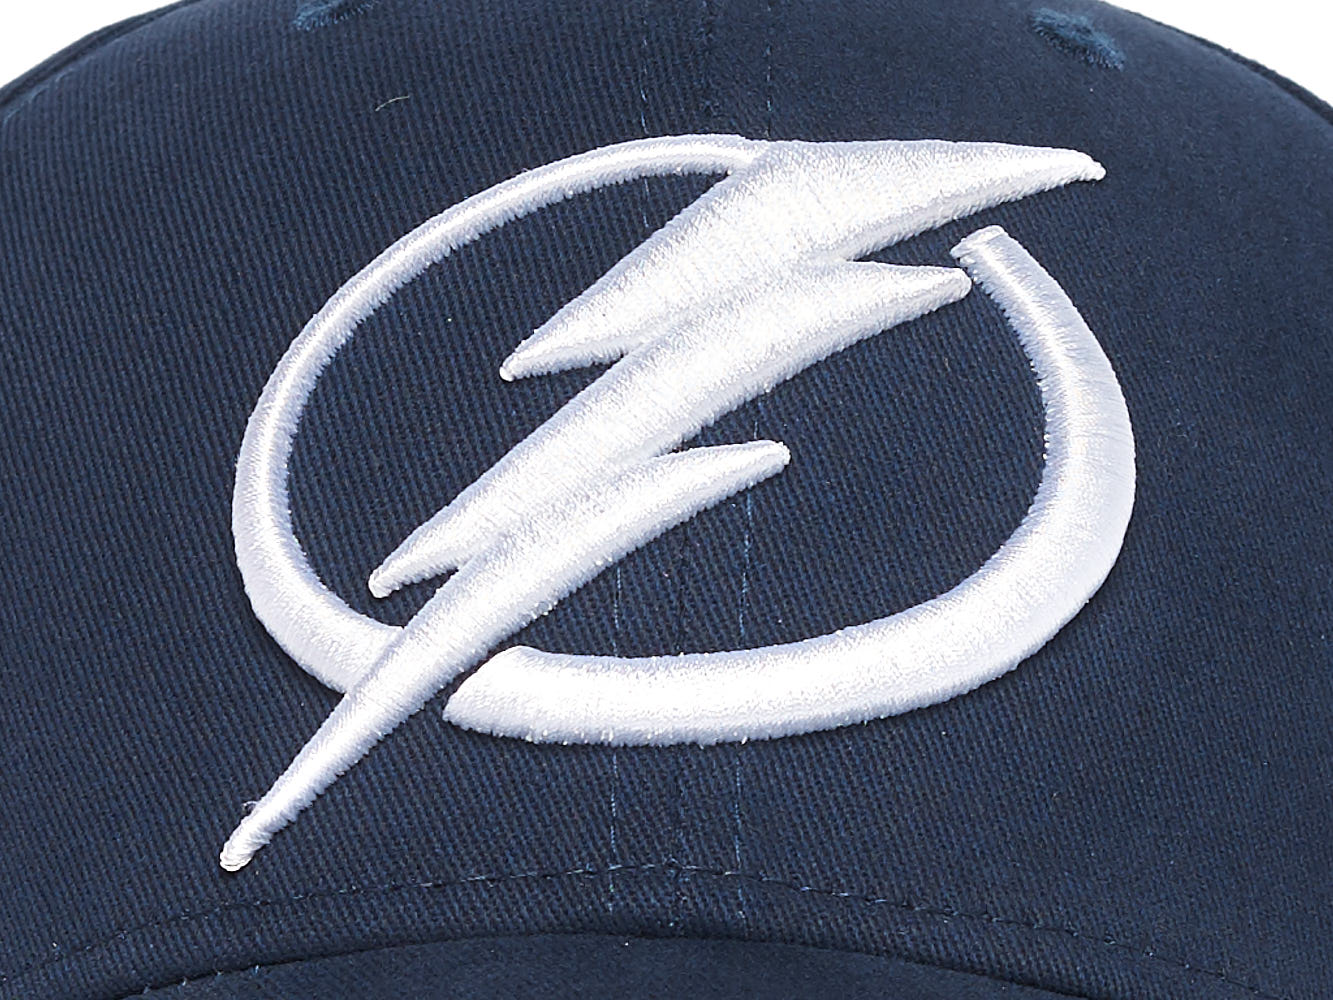  Atributika & club NHL Tampa Bay Lightning SR